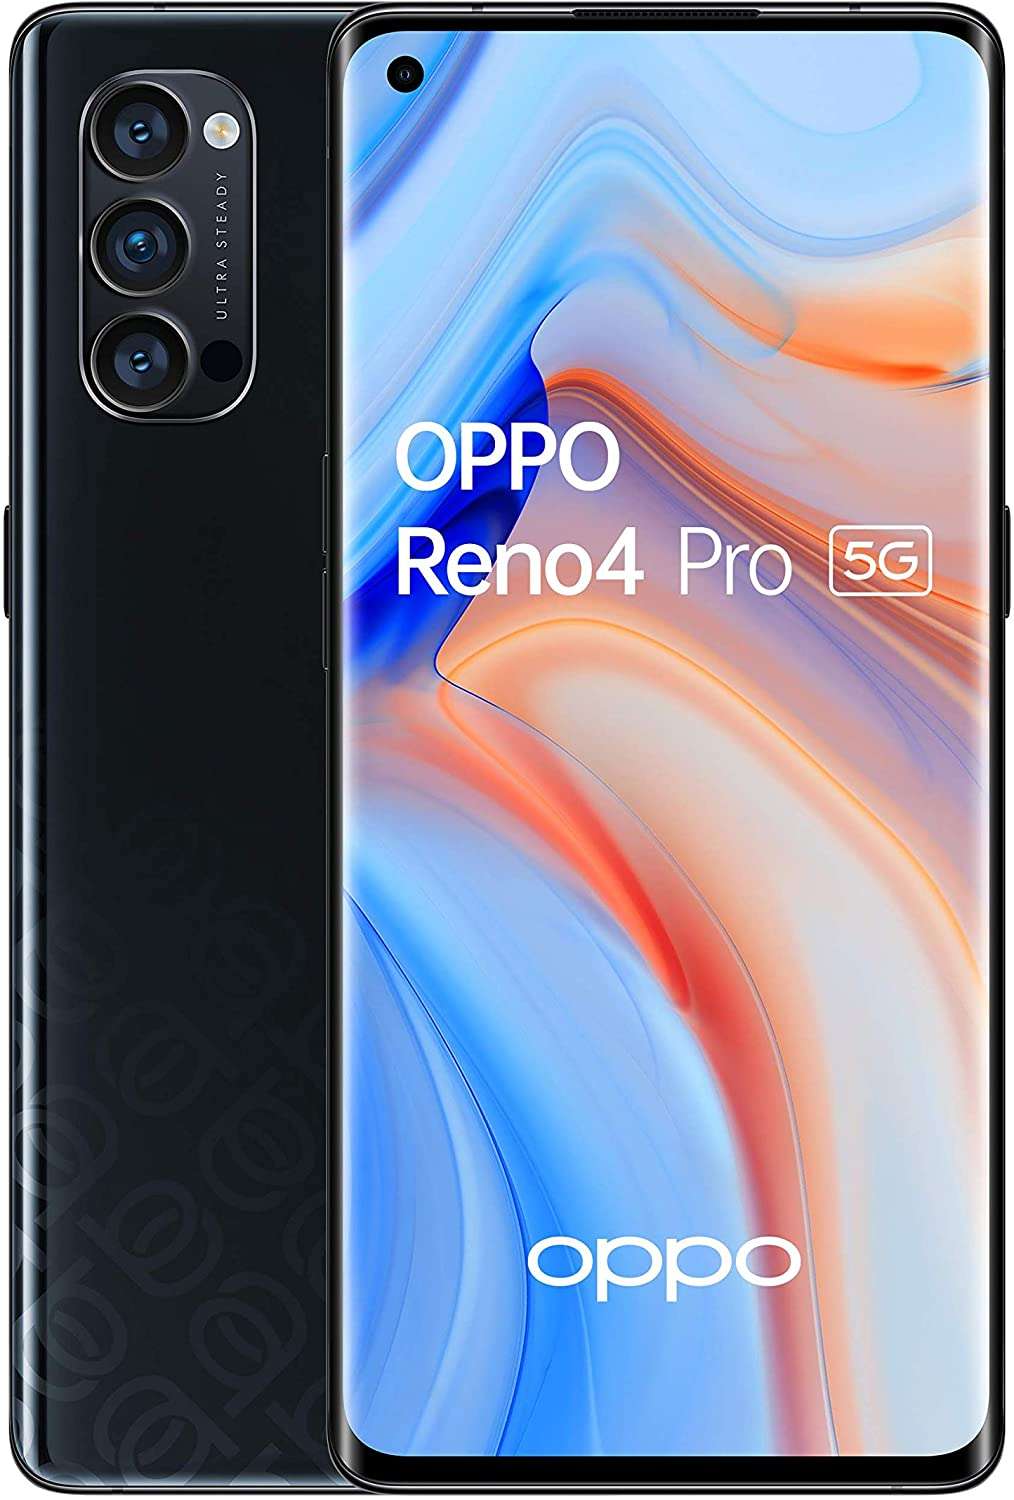 Bon plan Amazon : 300 ¬ d'économie sur le smartphone Oppo Reno 4 Pro